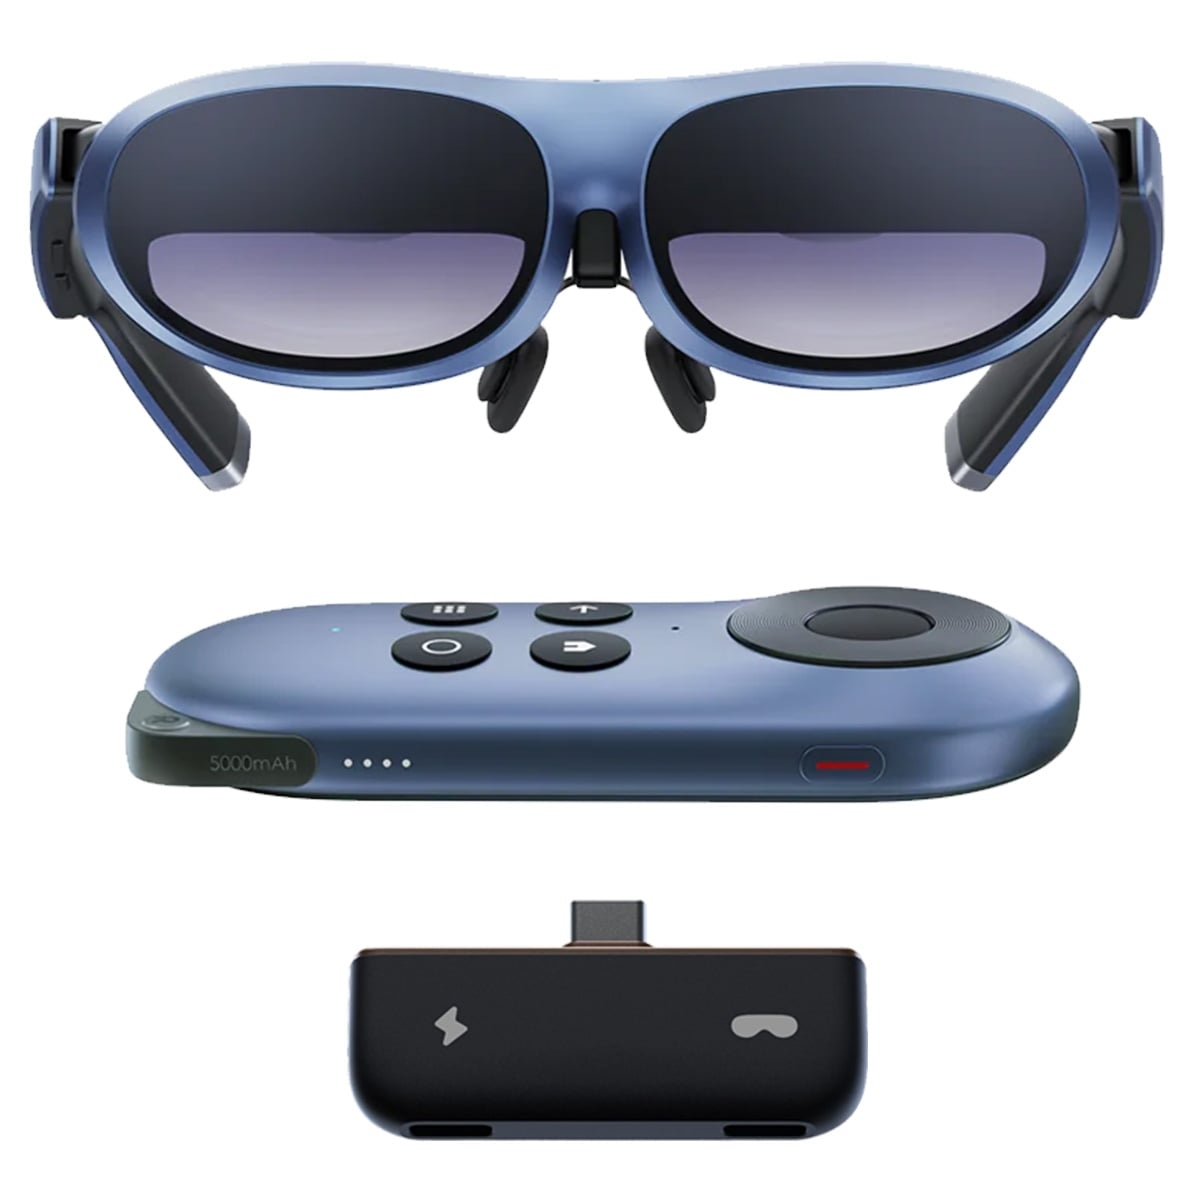 Station Brille VR & AR mit Max Hub ROKID Brille